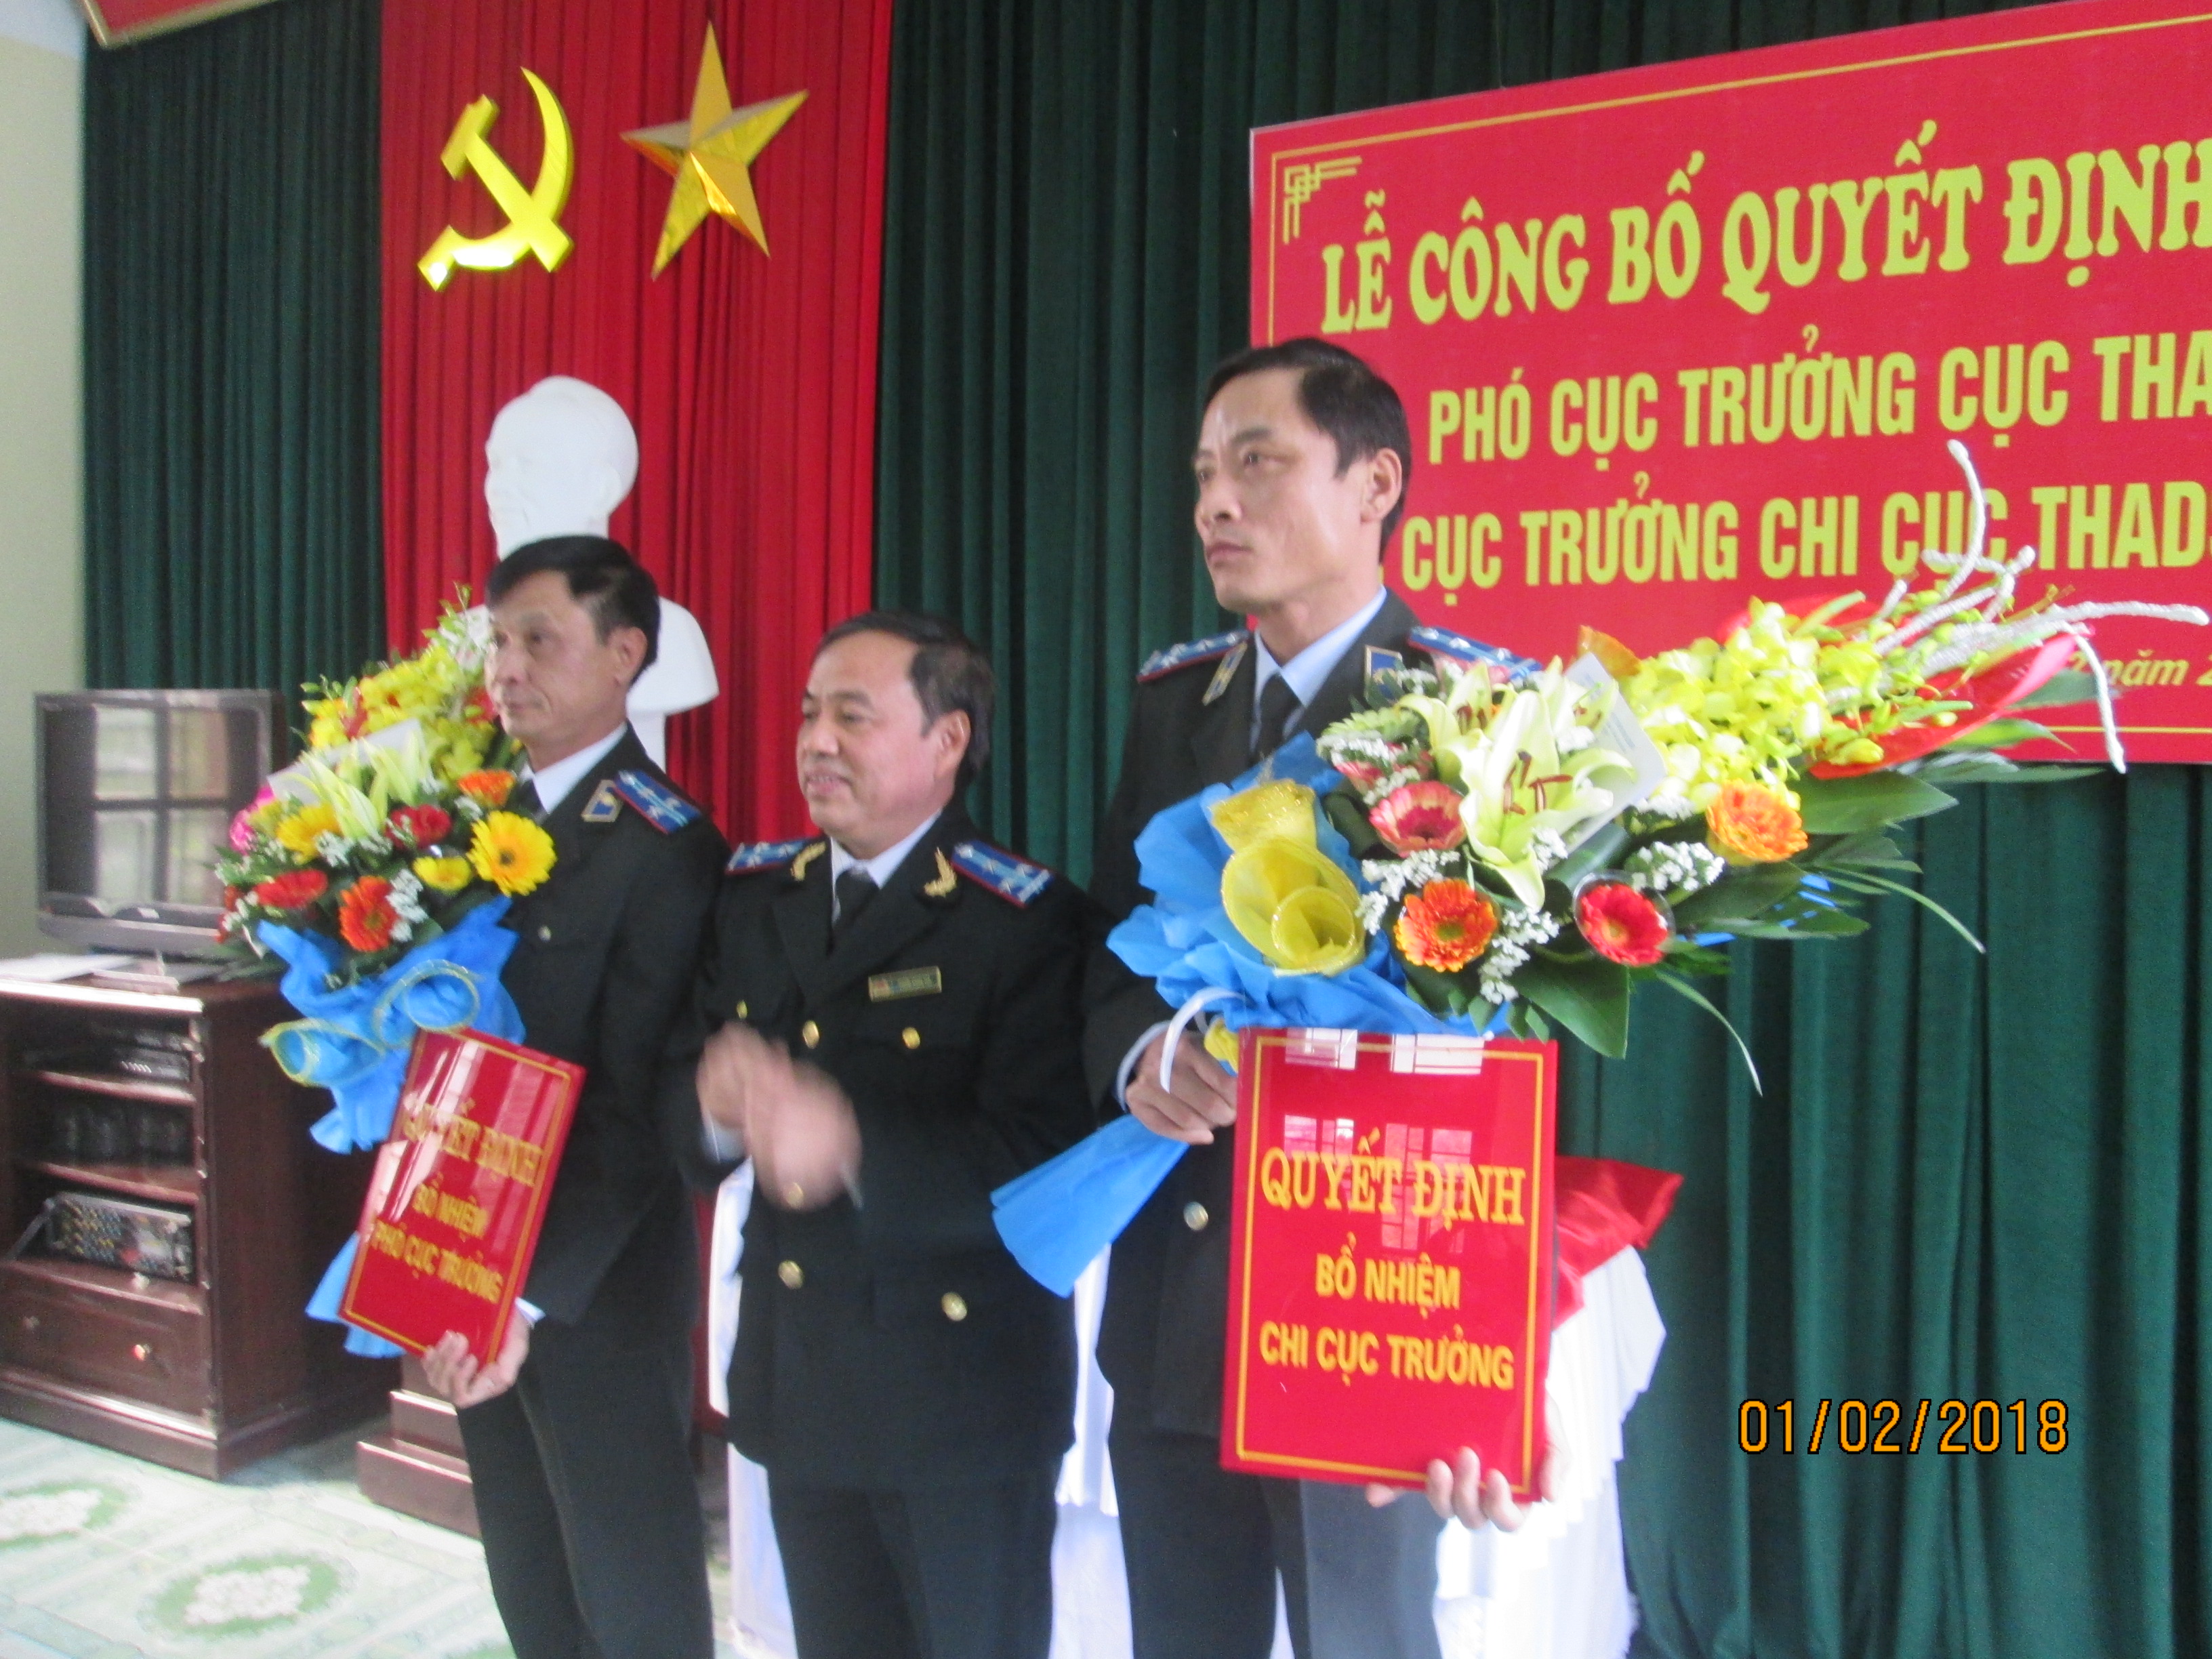 Công bố quyết định bổ nhiệm Phó cục trưởng Cục THADS tỉnh Ninh Bình và Chi cục trưởng Chi cục THADS thành phố Ninh Bình.